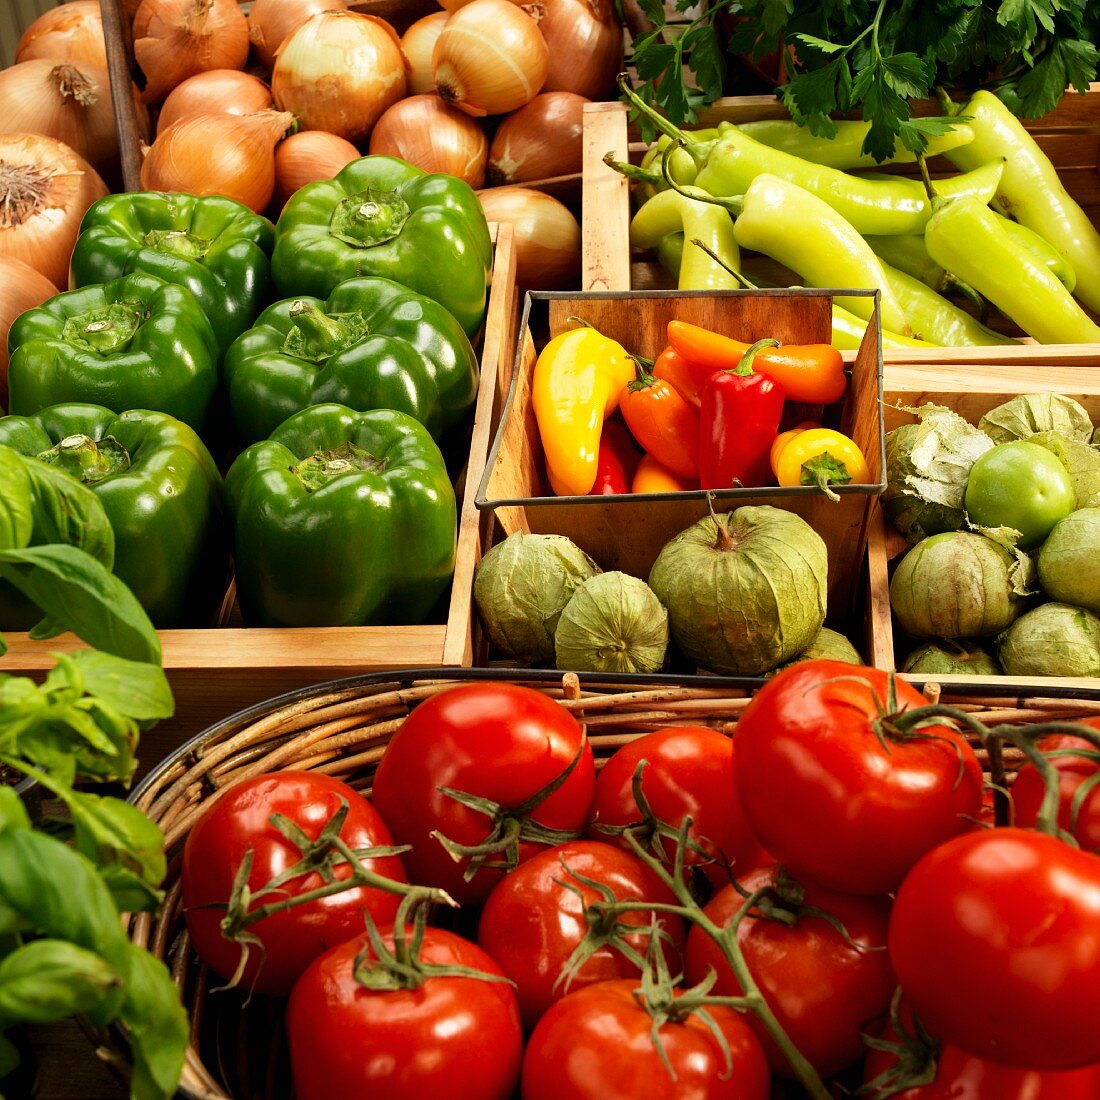 Bio-Tomaten, Tomatillos, Paprikaschoten, Peperoni, Zwiebeln und Basilikum in Behältern auf dem Bauernmarkt